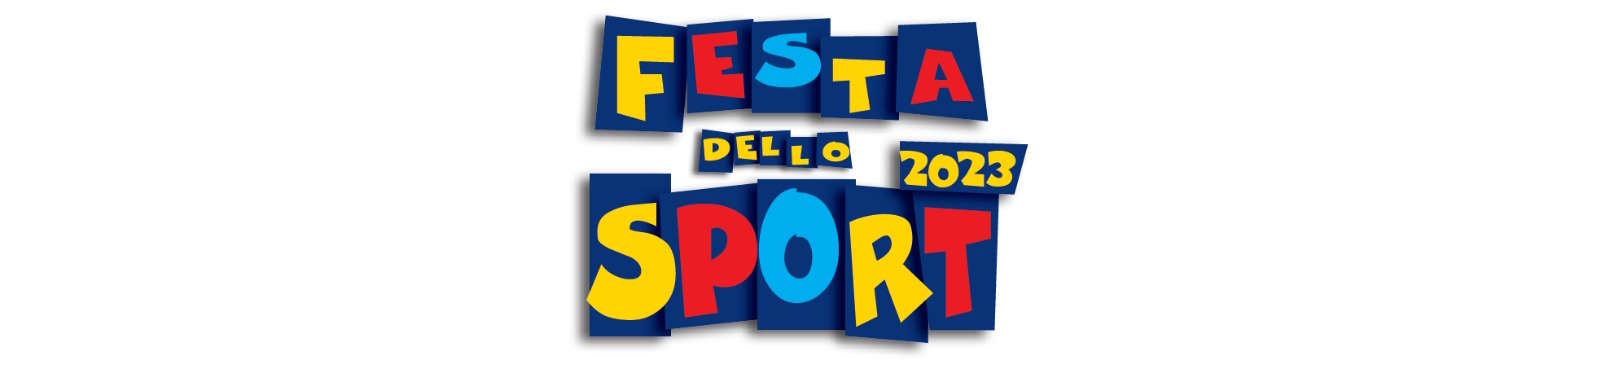 Festa dello Sport 2023